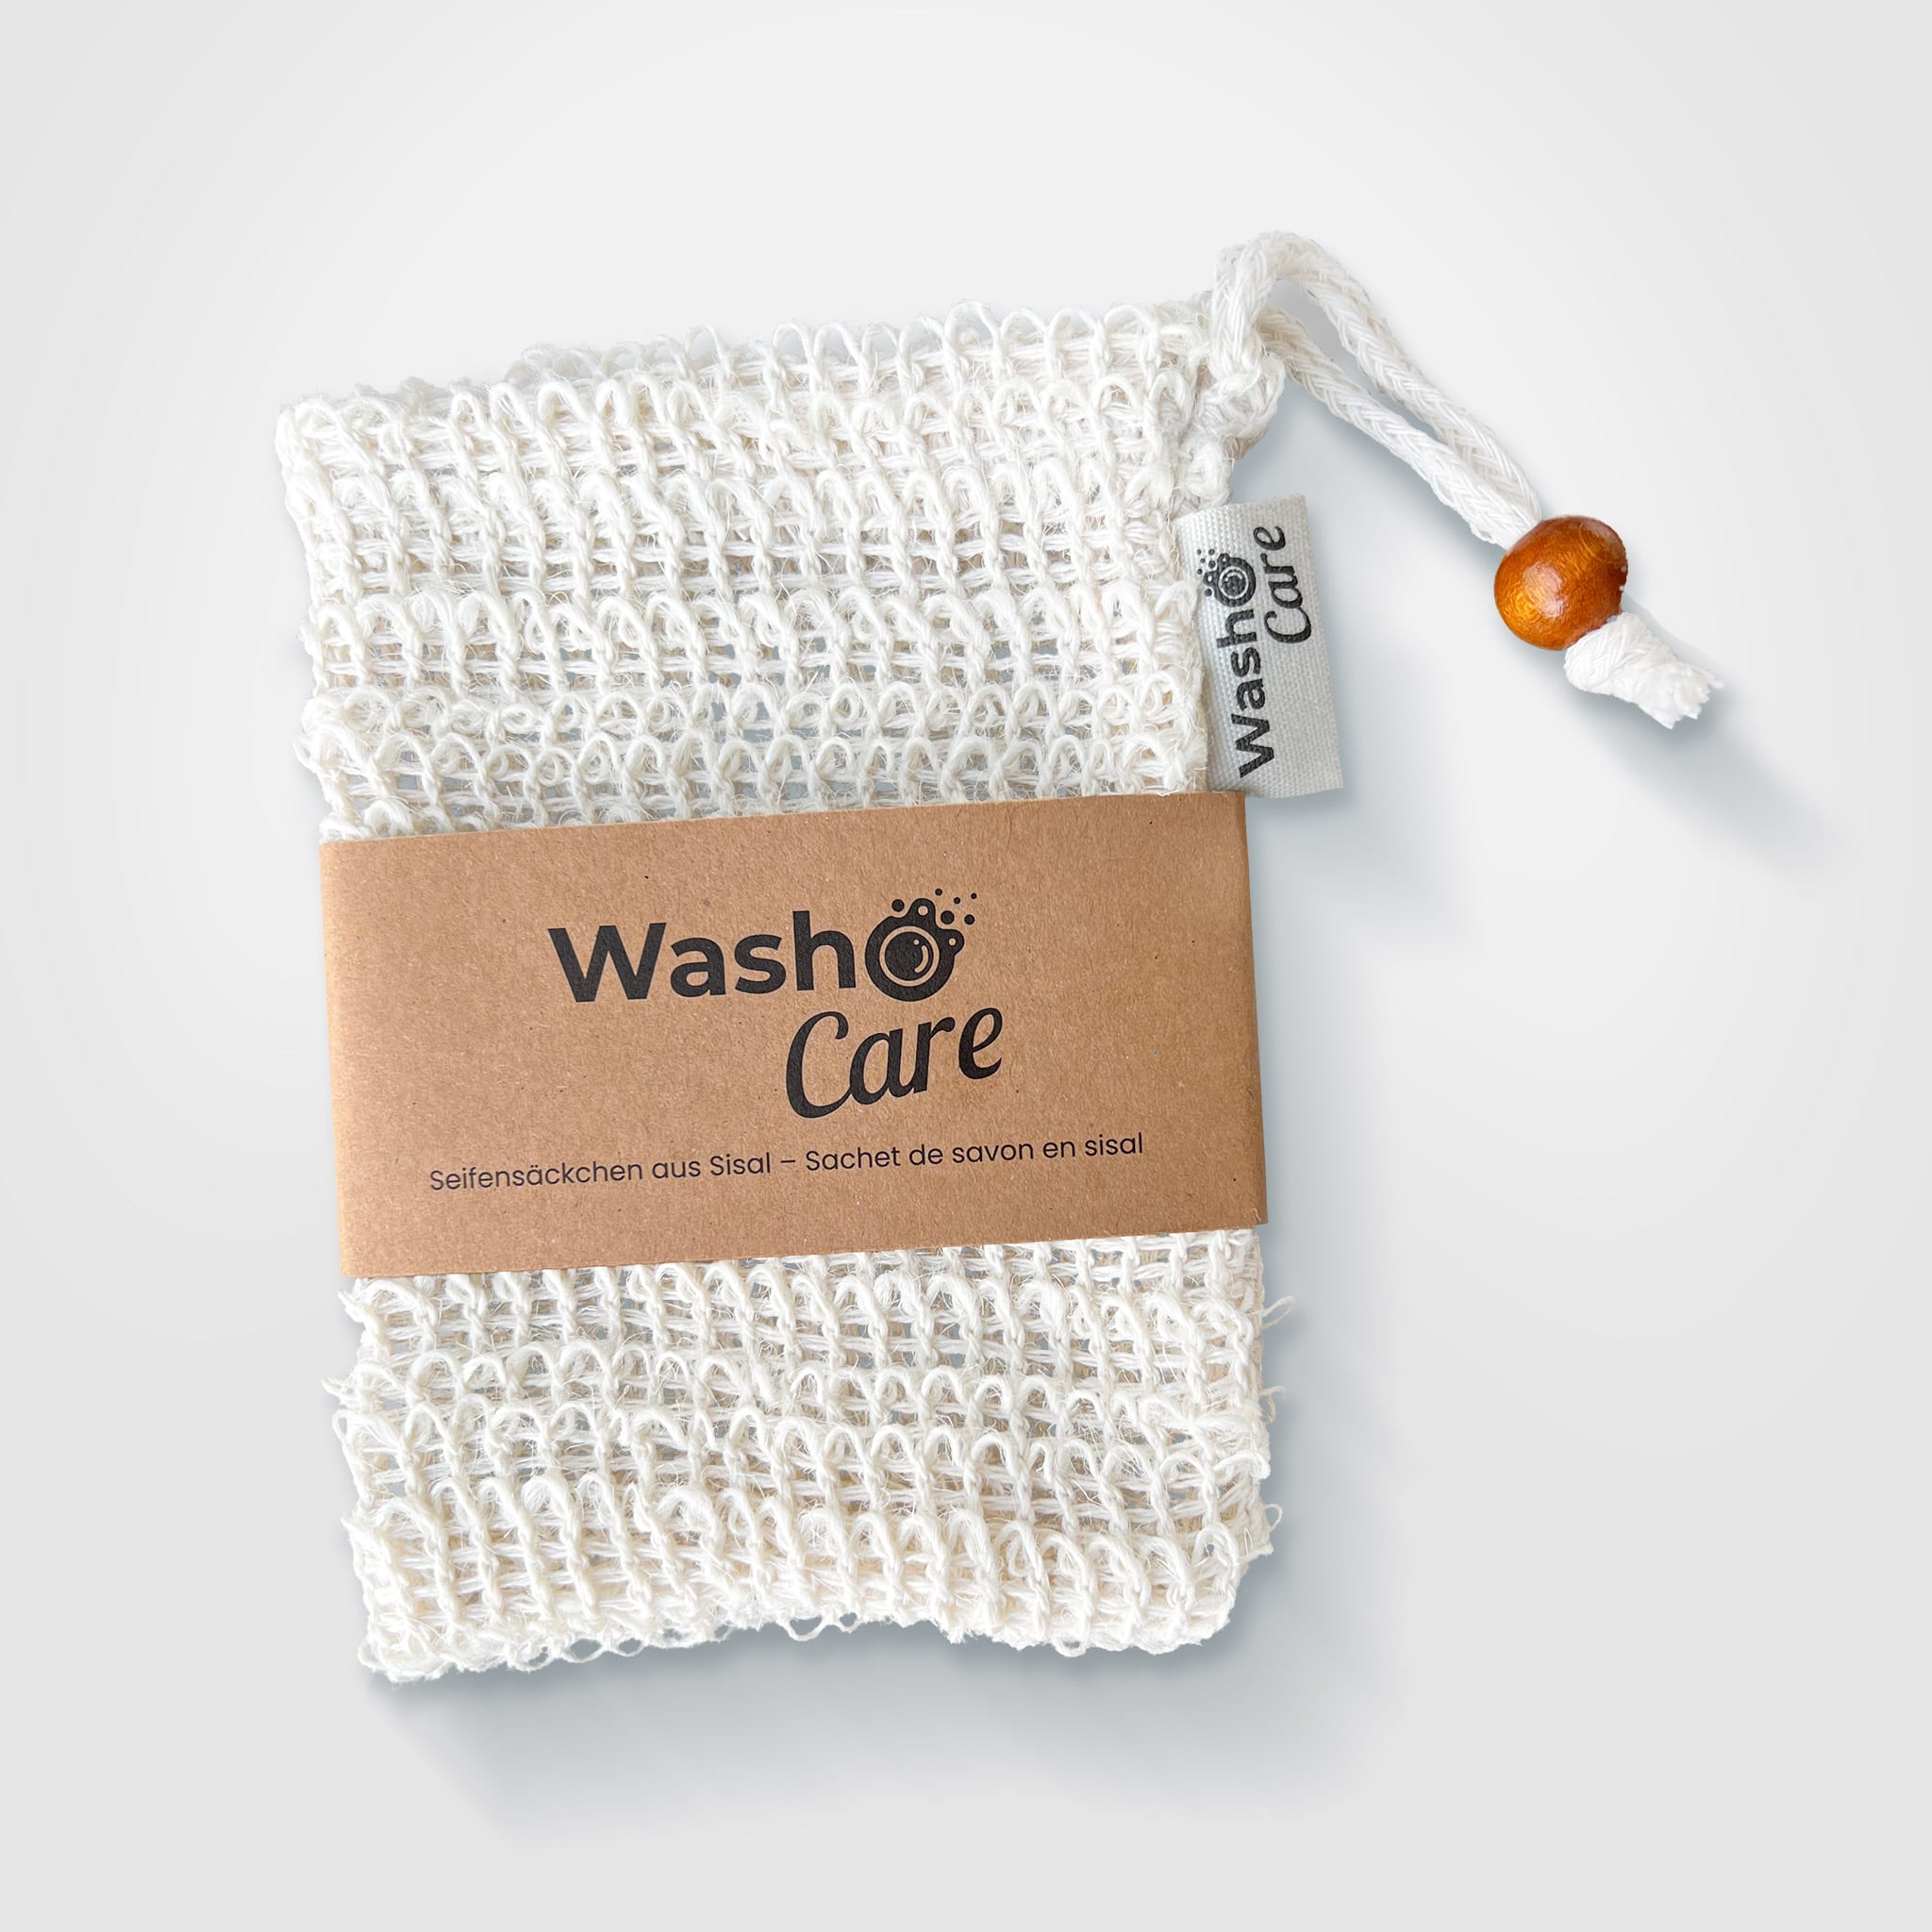 Washo Care Swiss Edition Starter Set - plus Zubehör - washo.ch